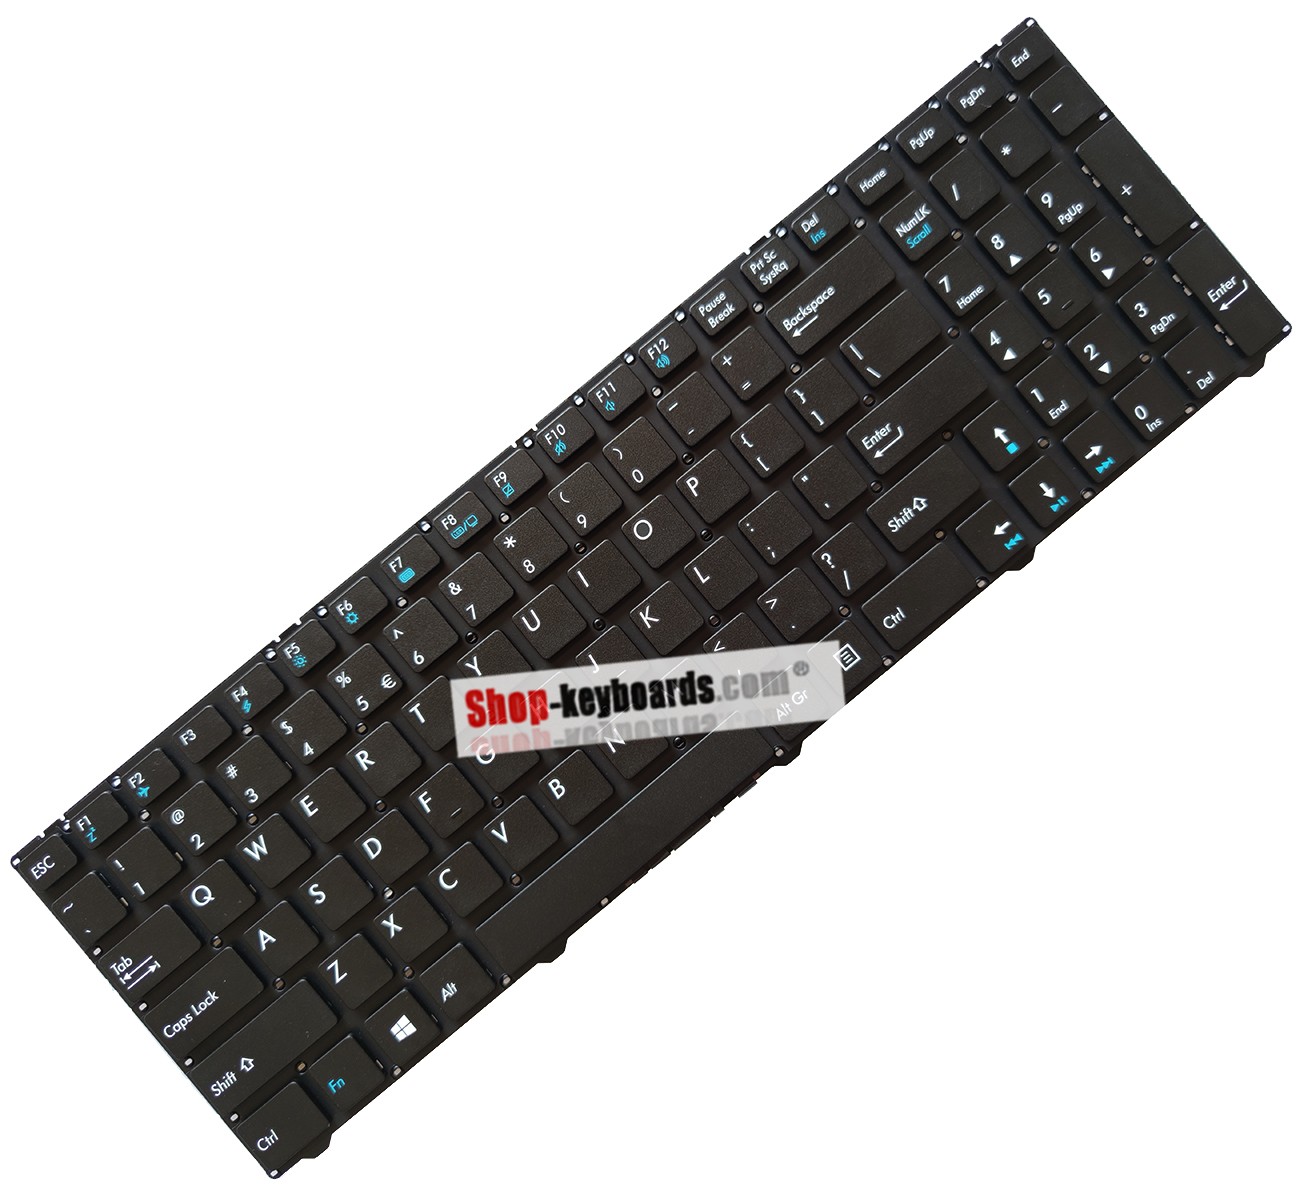 Medion Akoya P6660 Keyboard replacement